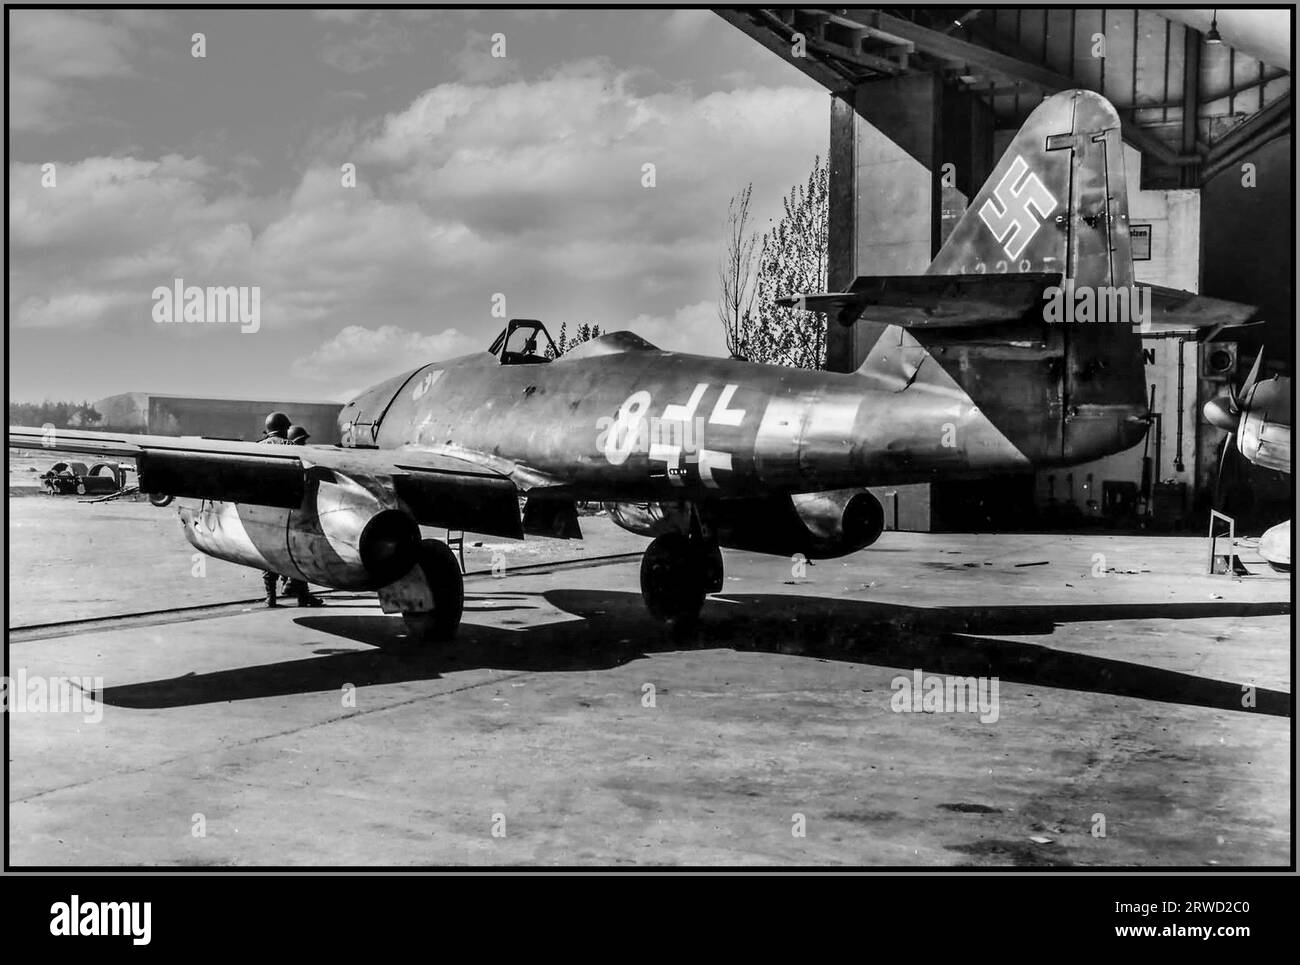 DER NAZI-JET Messerschmitt Me 262 Luftwaffe 1945 nach dem 2. Weltkrieg, auch Schwalbe genannt, in Jagdversionen, oder Sturmvogel in Jagdbomberversionen, war ein Kampfflugzeug und Jagdbomber, das vom deutschen Flugzeugbauer Messerschmitt entworfen und produziert wurde. Es war das weltweit erste einsatzbereite Jet-angetriebene Kampfflugzeug. Die Konstruktion der Me 262 begann im April 1939, vor dem Zweiten Weltkrieg Am 18. April 1941 erfolgte der Erstflug mit einem Kolbenmotor und am 18. Juli 1942 der erste Flug mit Jetantrieb. Stockfoto